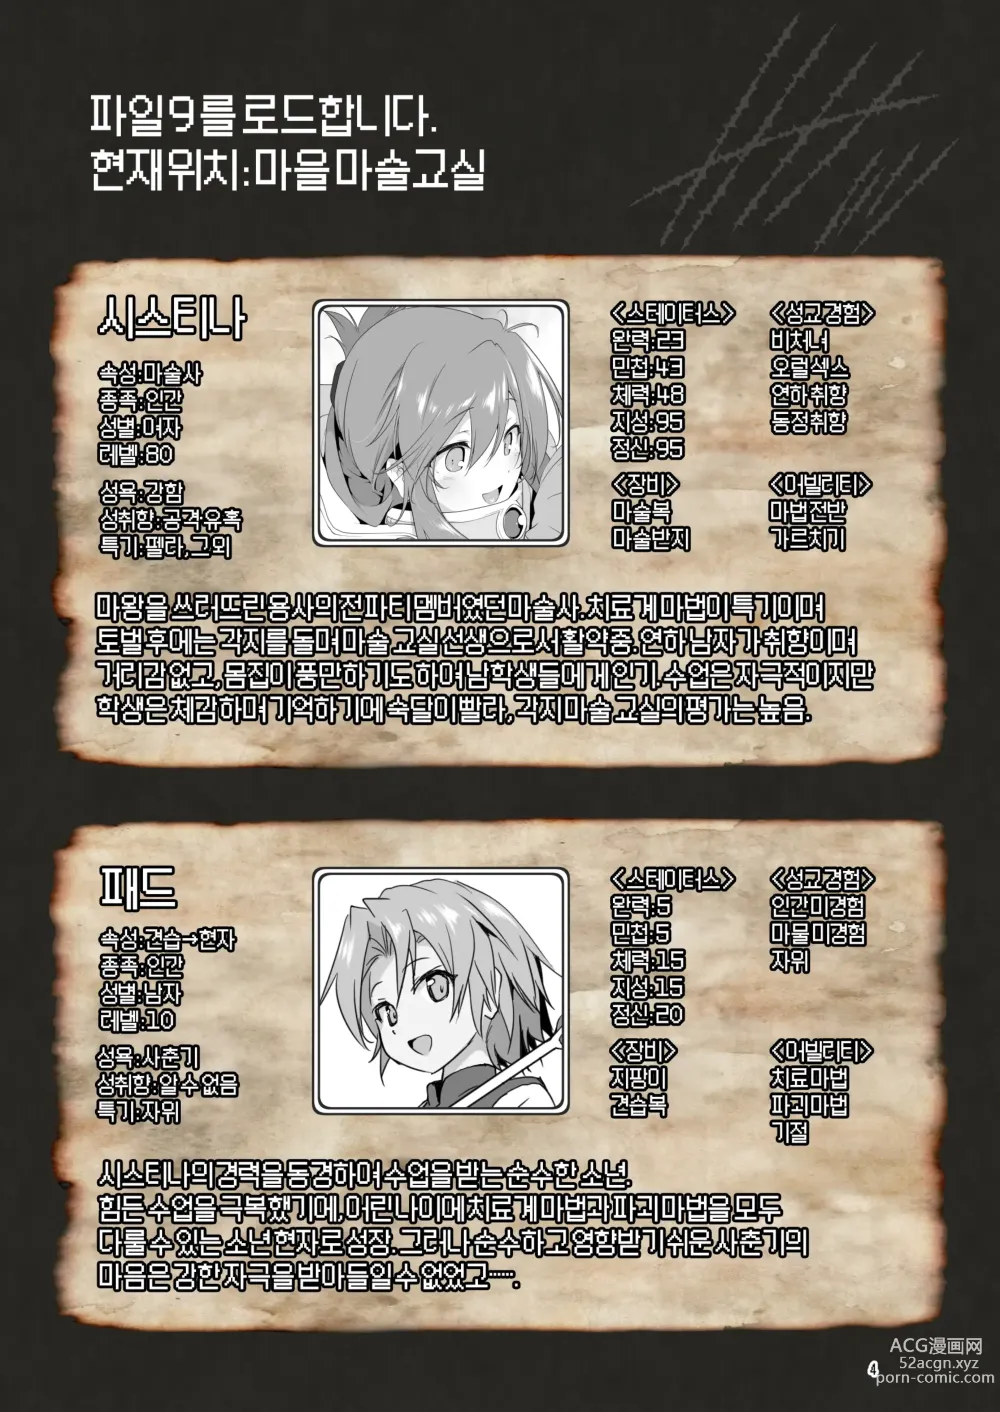 Page 4 of doujinshi 참으로 유감이지만 모험의 서 9는 사라져버렸습니다.